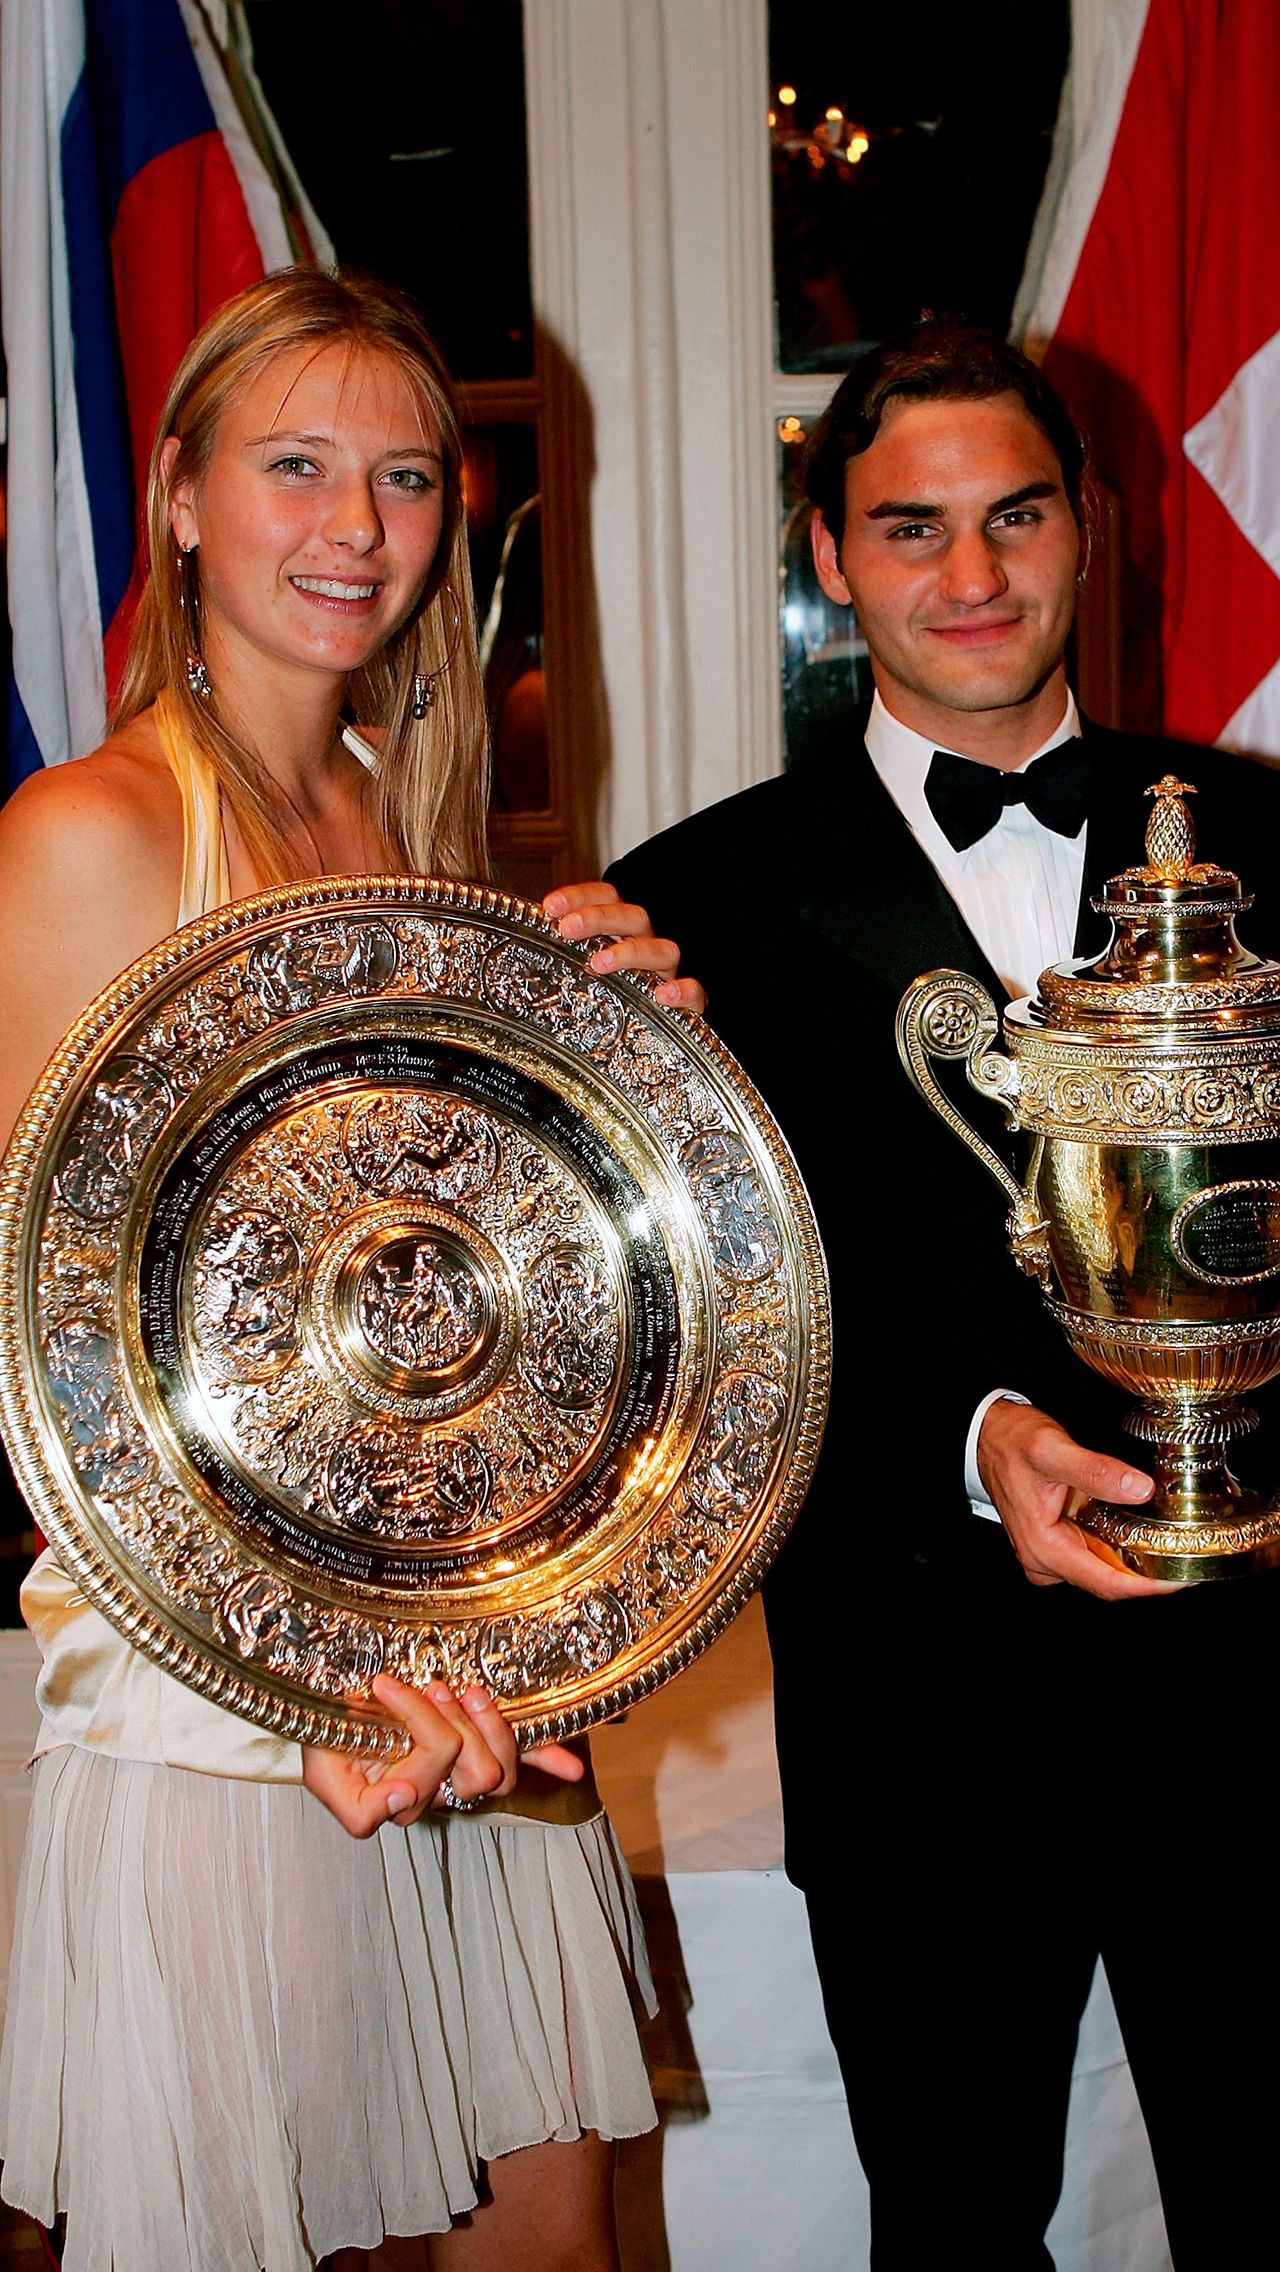 Партнёршей Роджера на балу бывала и Мария Шарапова: она выиграла Уимблдон в 2004-м.